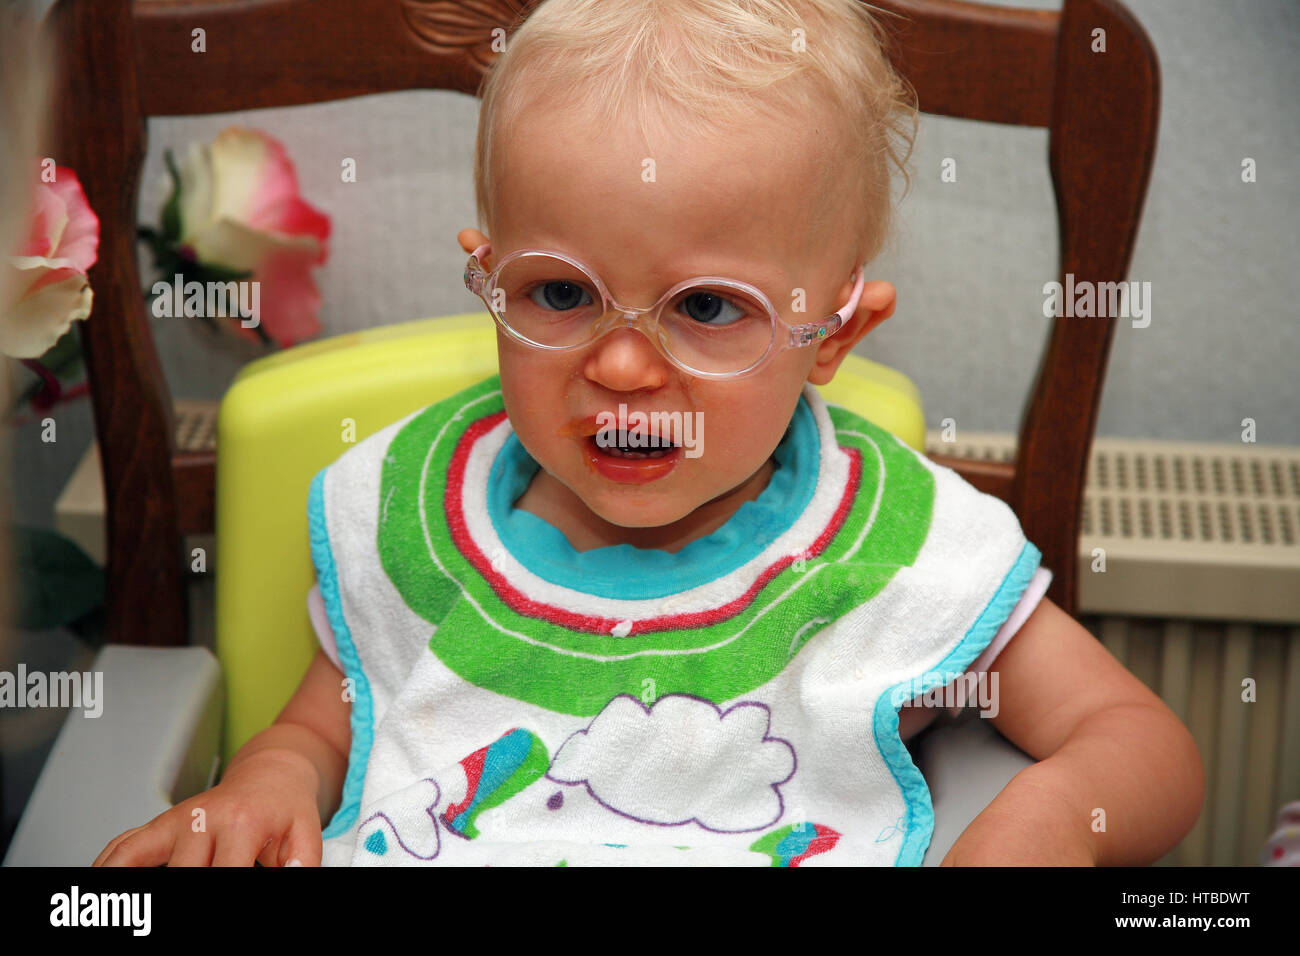 Bébé fille avec des lunettes, les pleurs Banque D'Images